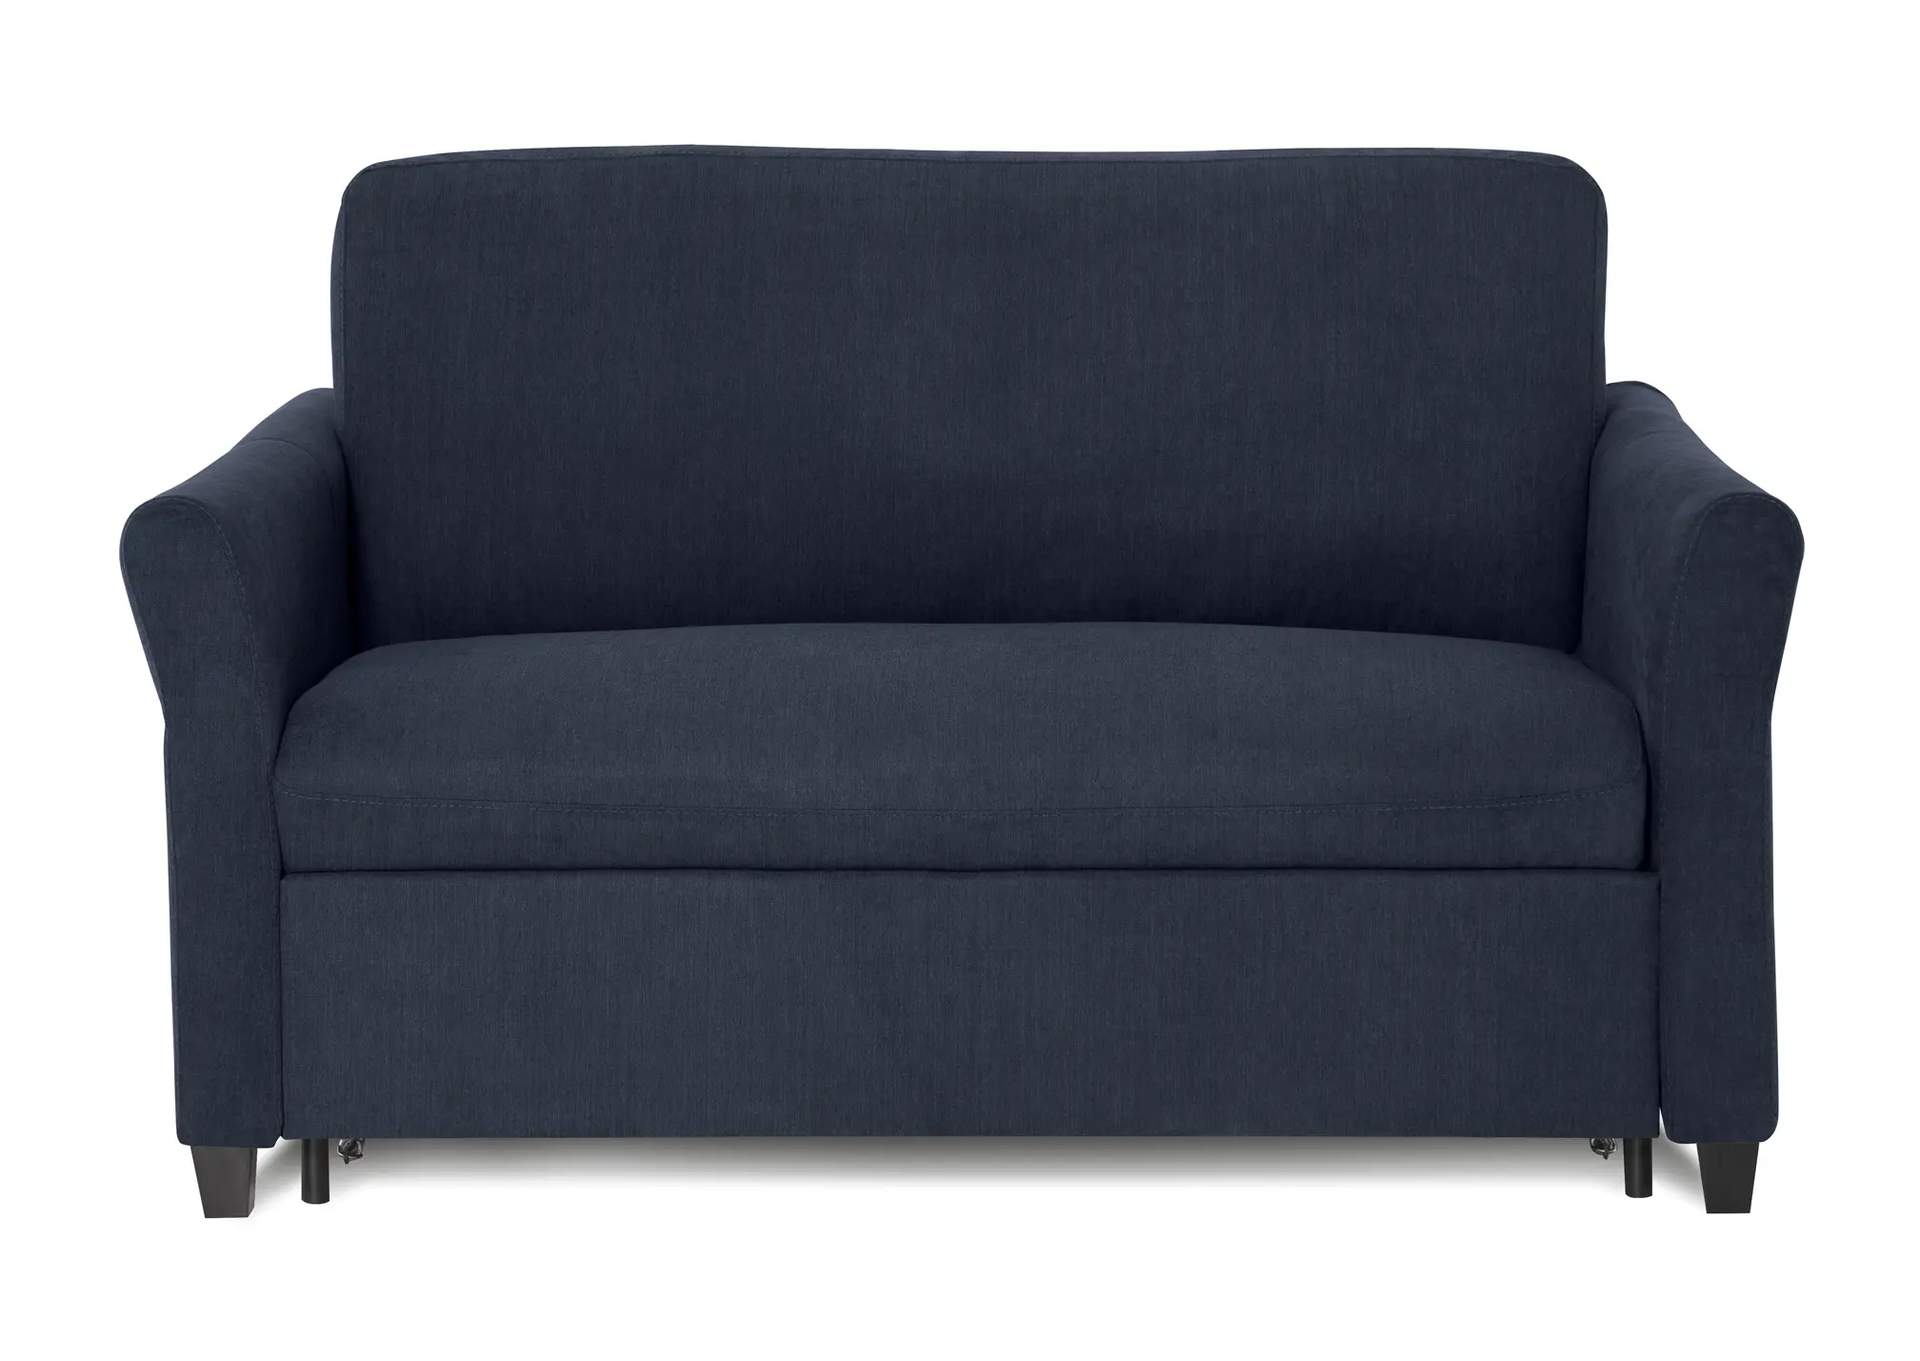 Madeline Sofabed, Single, 1 Cushion,Palliser Furniture